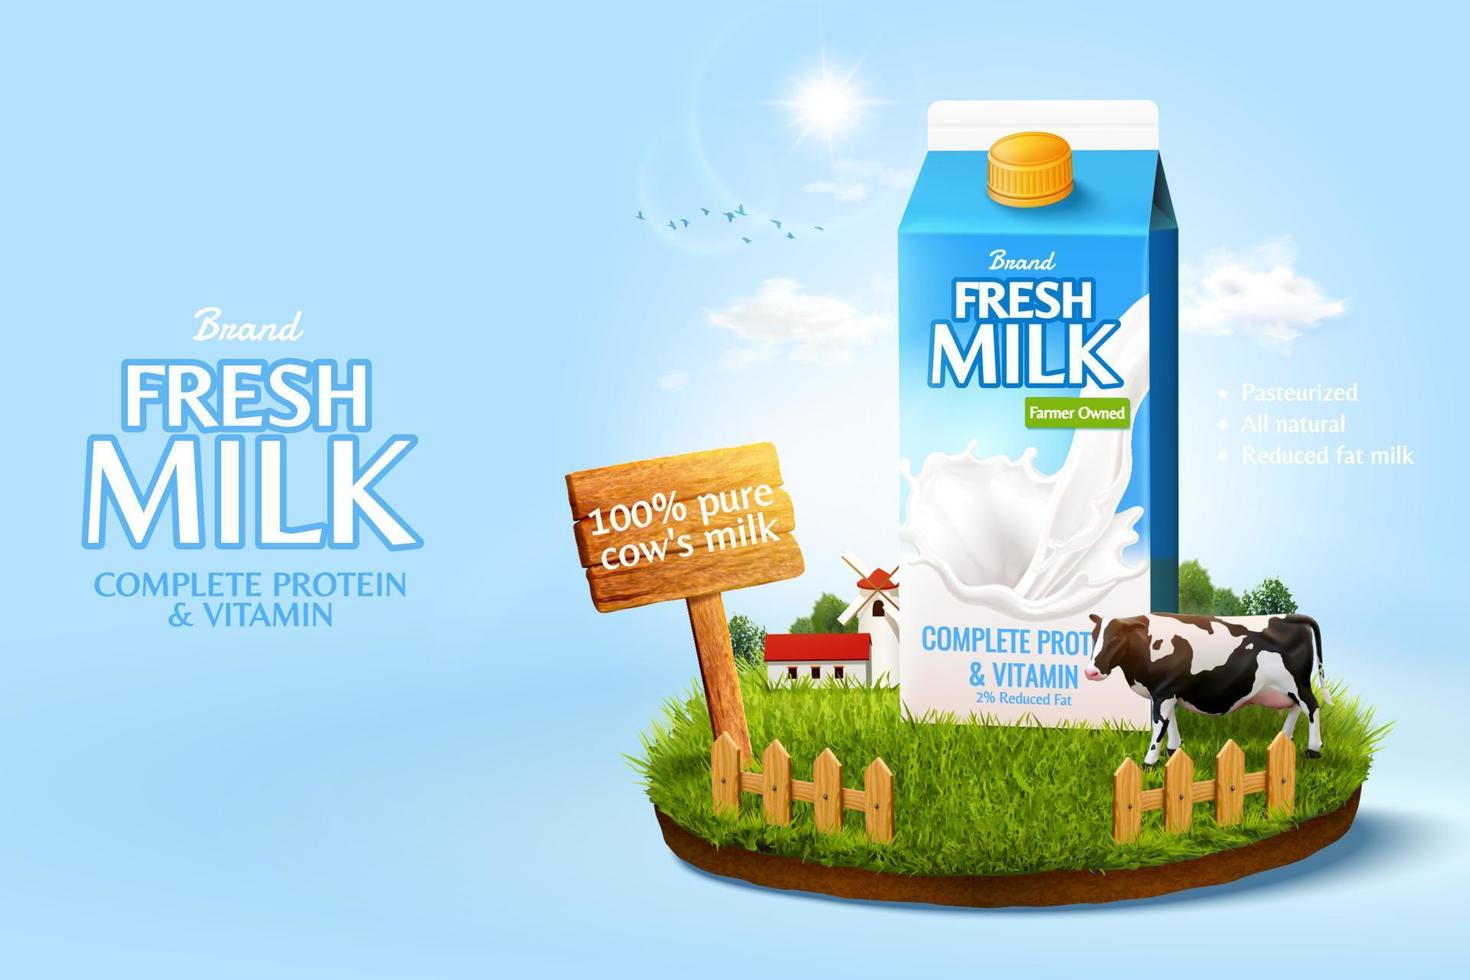 3d Milch Anzeige Vorlage zum Produkt Anzeige. Milch Pack Attrappe, Lehrmodell, Simulation einstellen im ein Miniatur Bauernhof Insel auf Sonnenschein Himmel Hintergrund. vektor